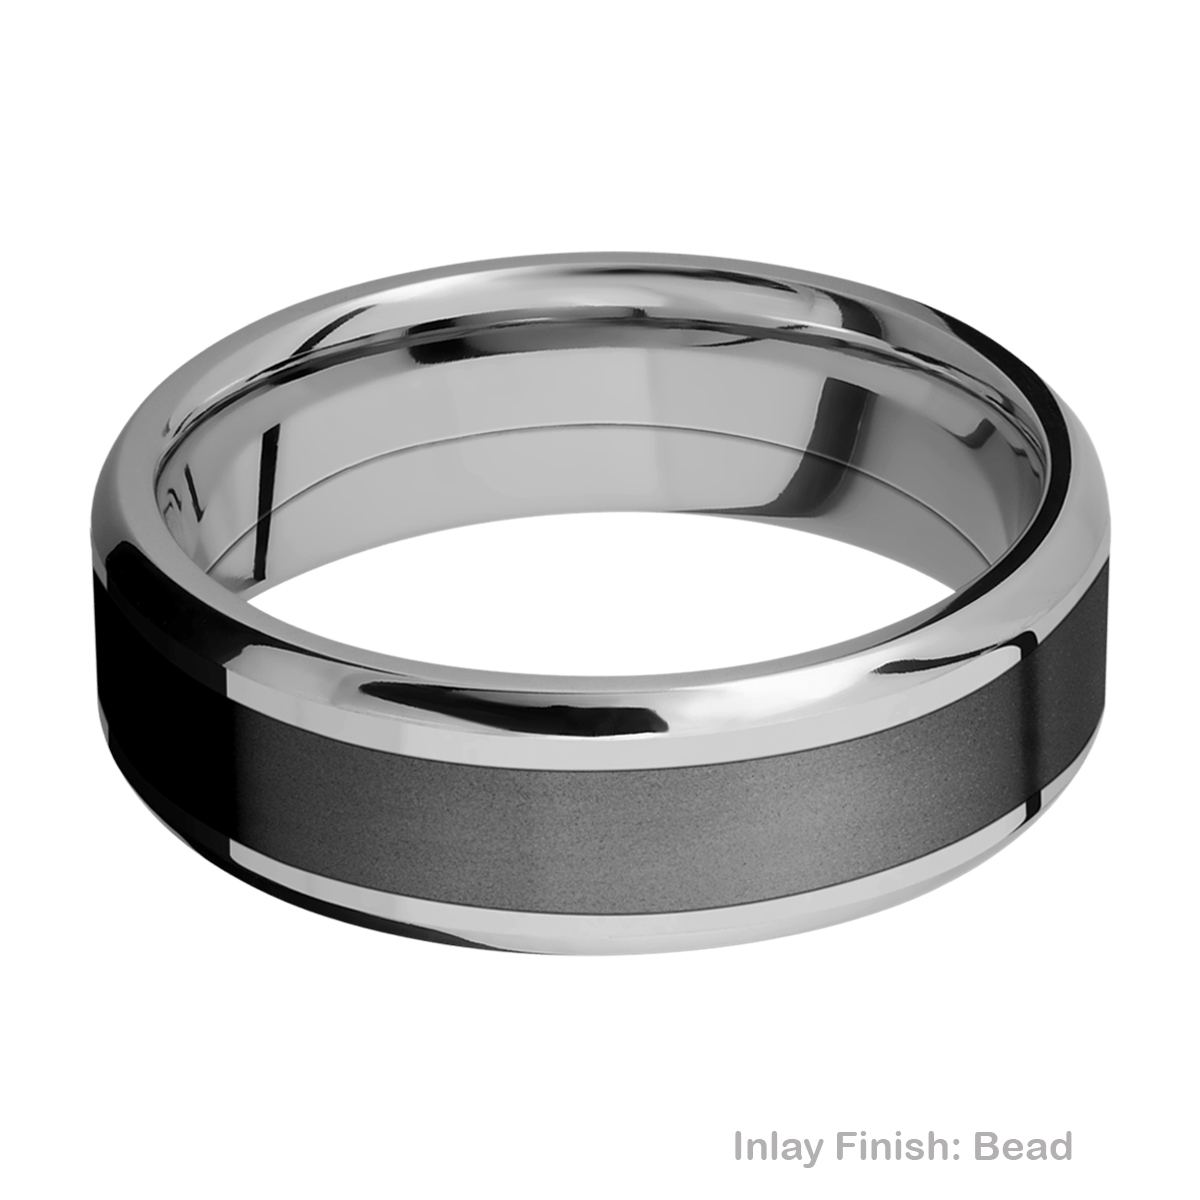 Lashbrook PF7B14(NS)/ZIRCONIUM Titanium Wedding Ring or Band